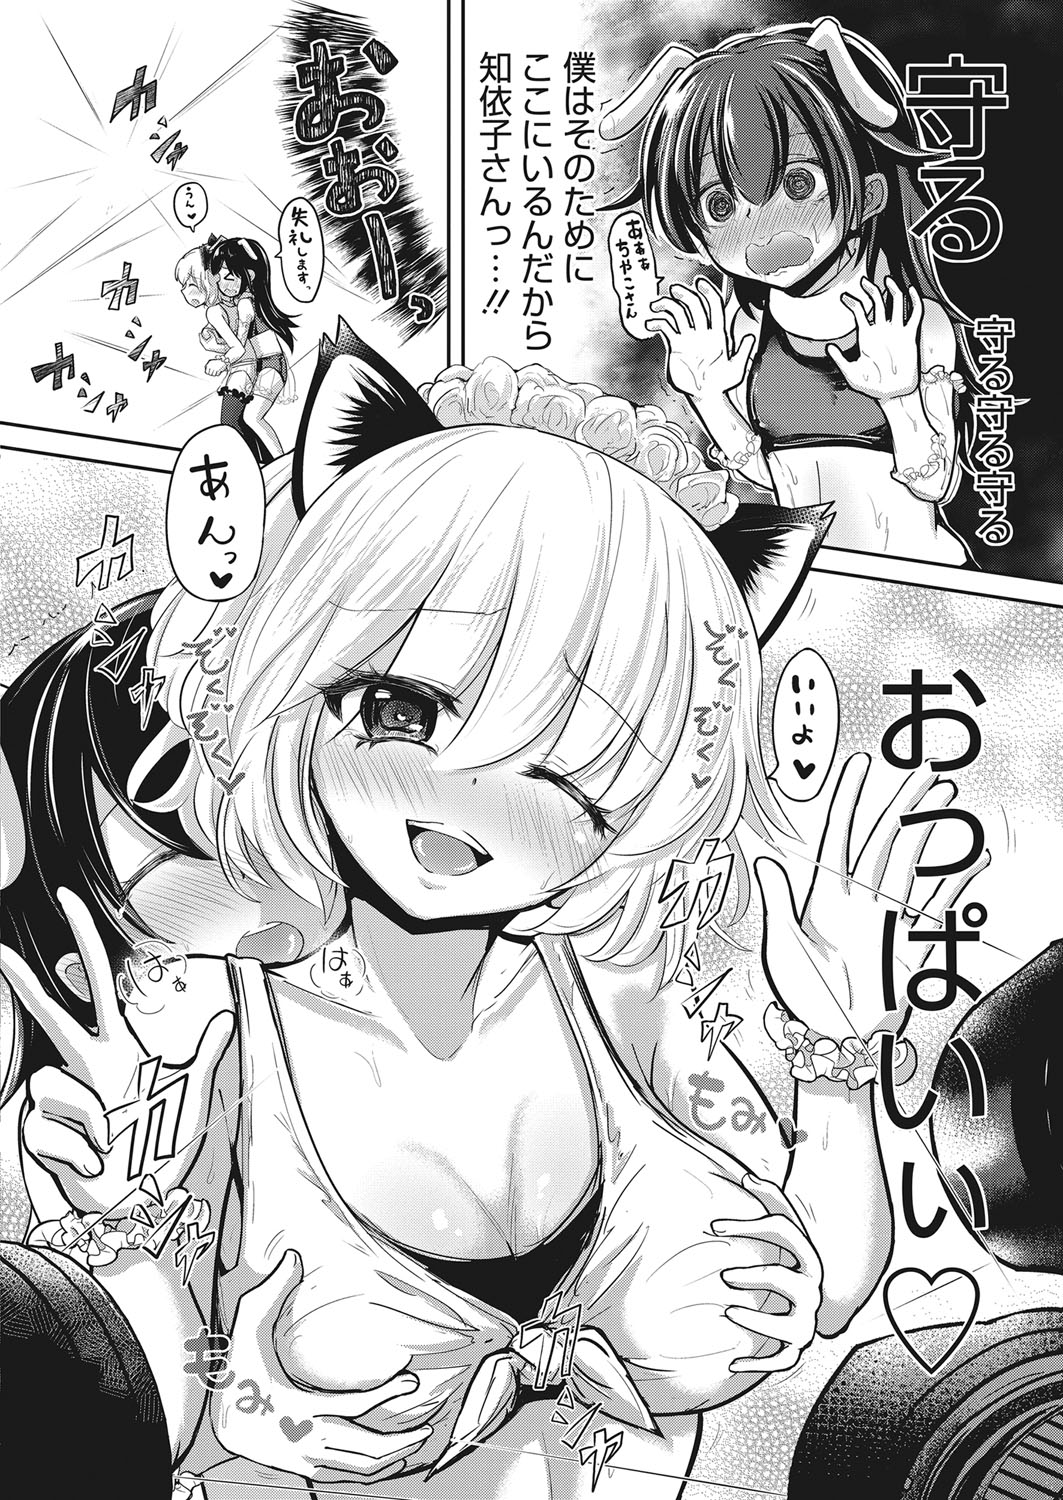 Web Manga Bangaichi Vol. 17 web 漫画ばんがいち Vol.17